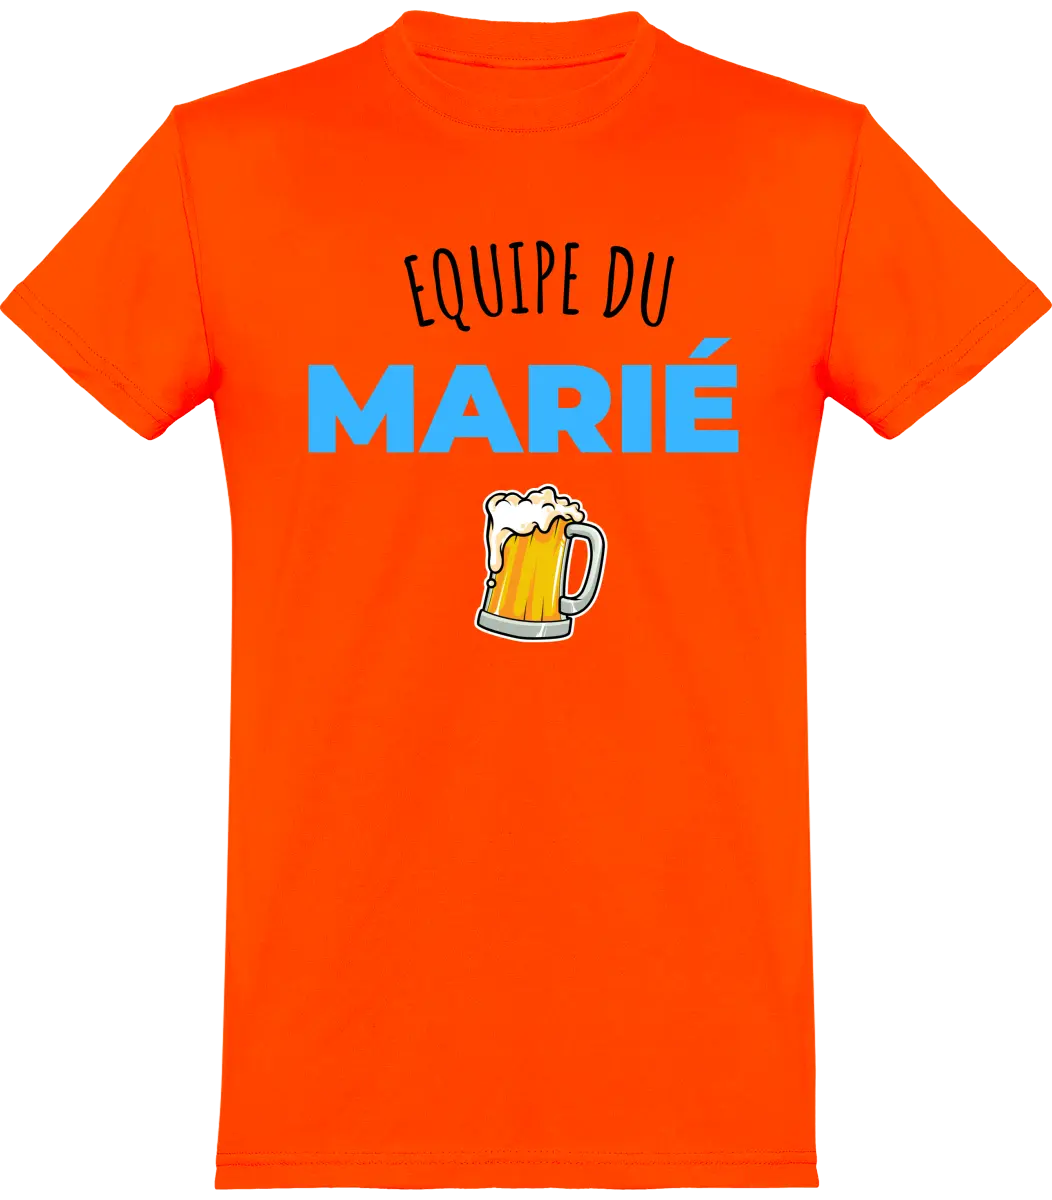 T-shirt EVG "Équipe du marié" | Mixte - French Humour